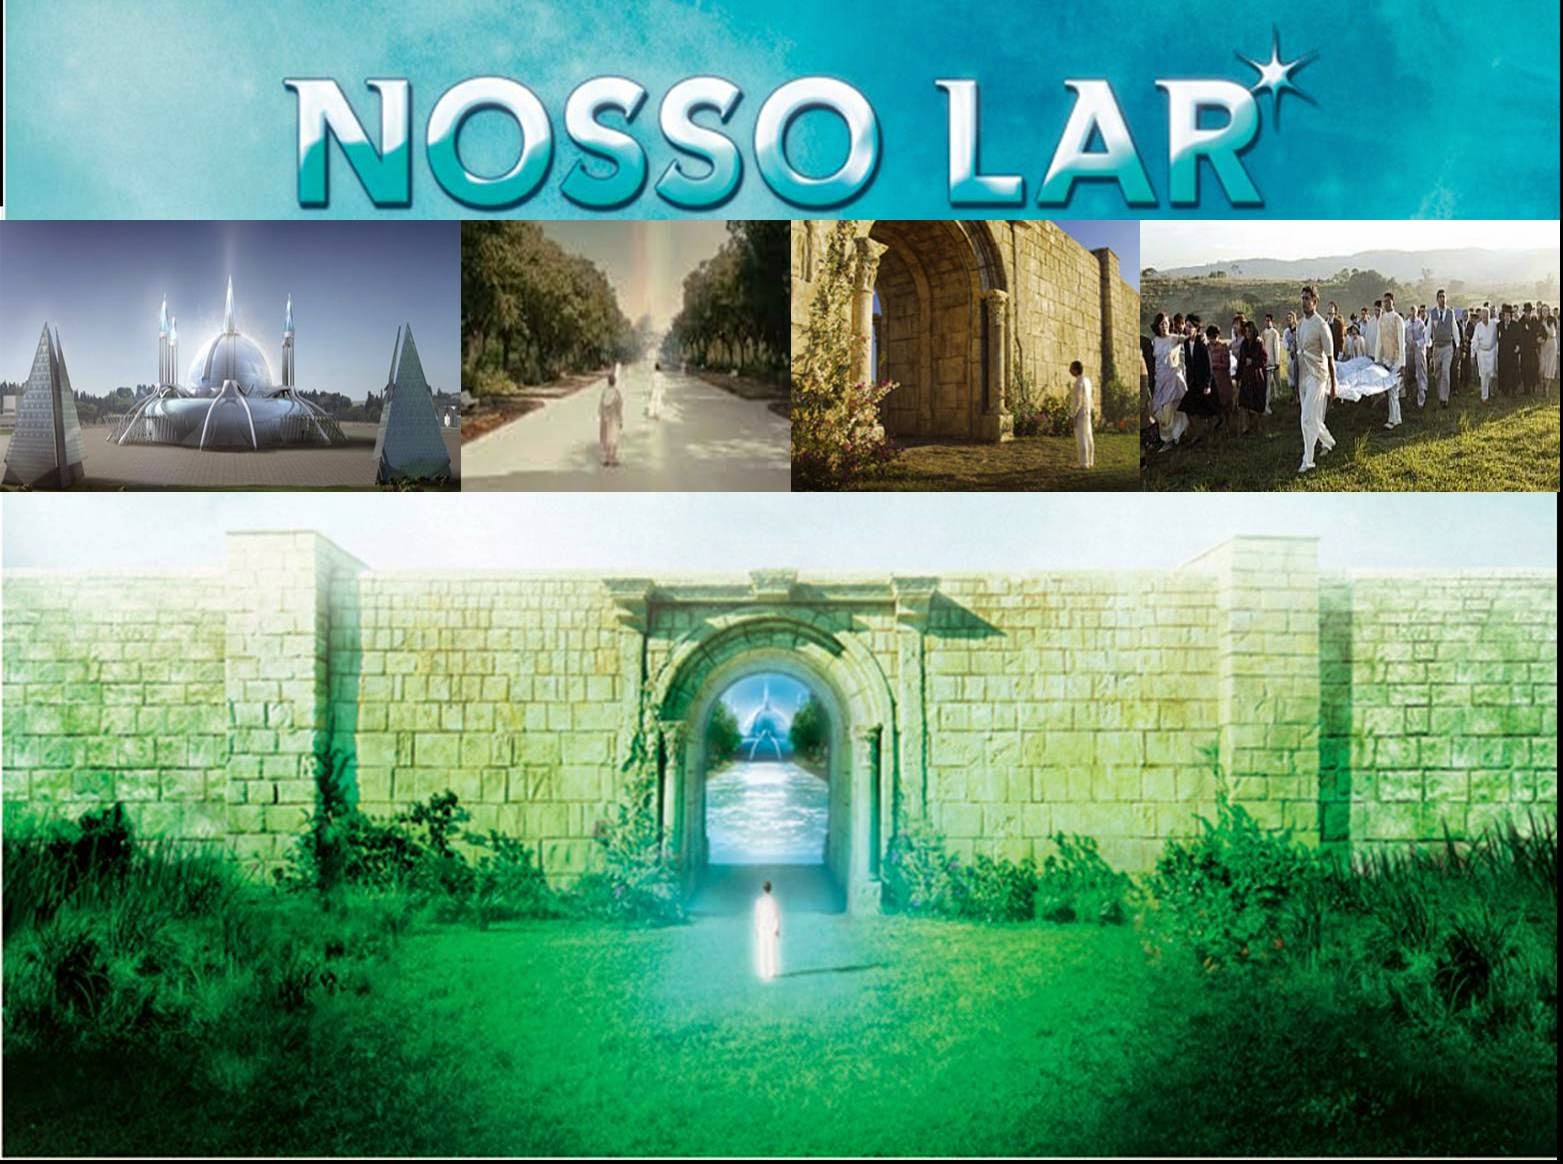 notre - (Film VOSTFR) "Nosso Lar" ou "Notre demeure" (+) Bande Annonce Nosso-lar